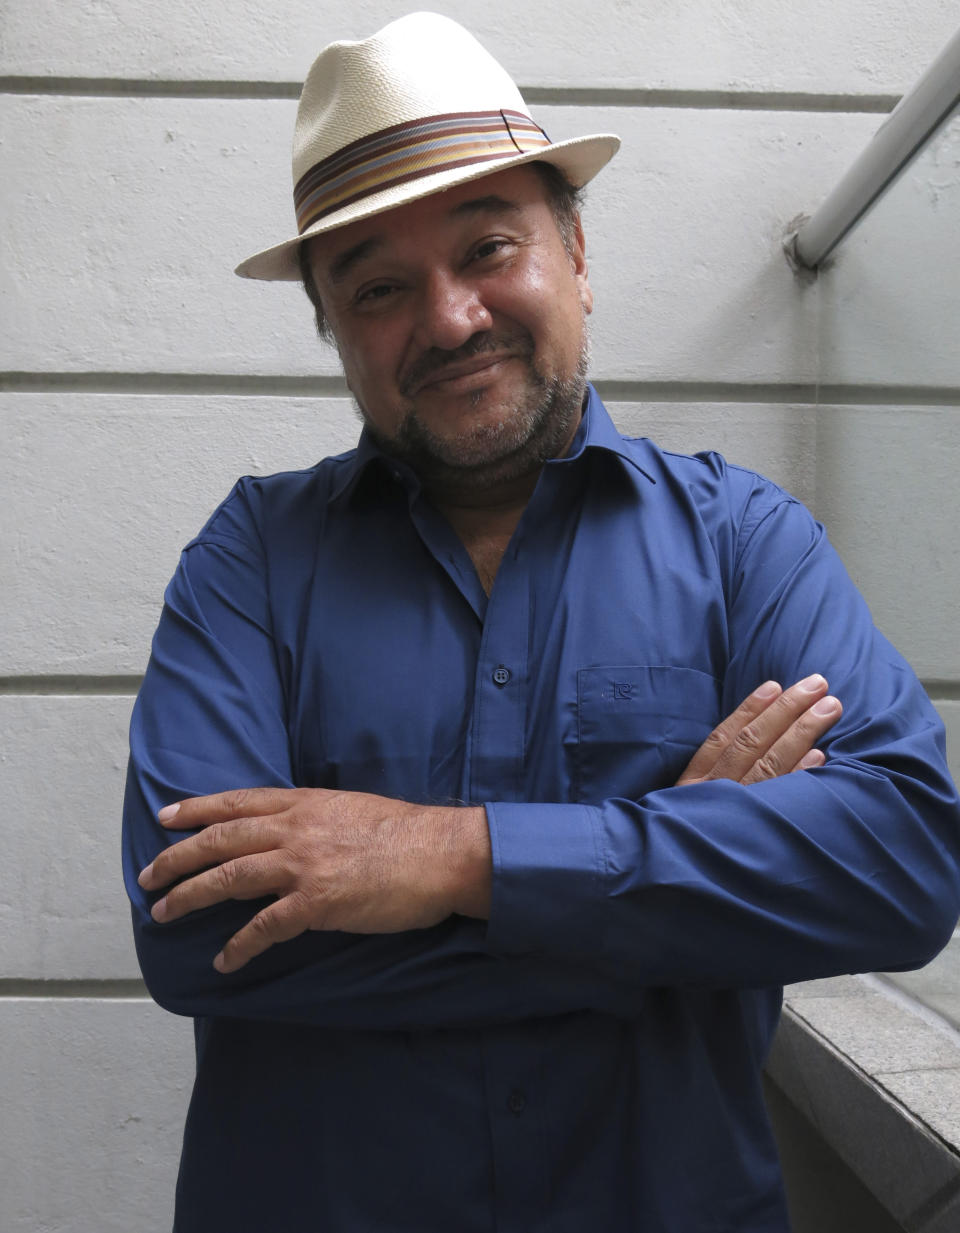 El tenor mexicano Ramón Vargas posa para un retrato en la Ciudad de México el miércoles 30 de agosto de 2023. Vargas celebrará 40 años de carrera con una gala de ópera el Palacio de Bellas Artes de la Ciudad de México el 10 de septiembre. (Foto AP/Berenice Bautista)